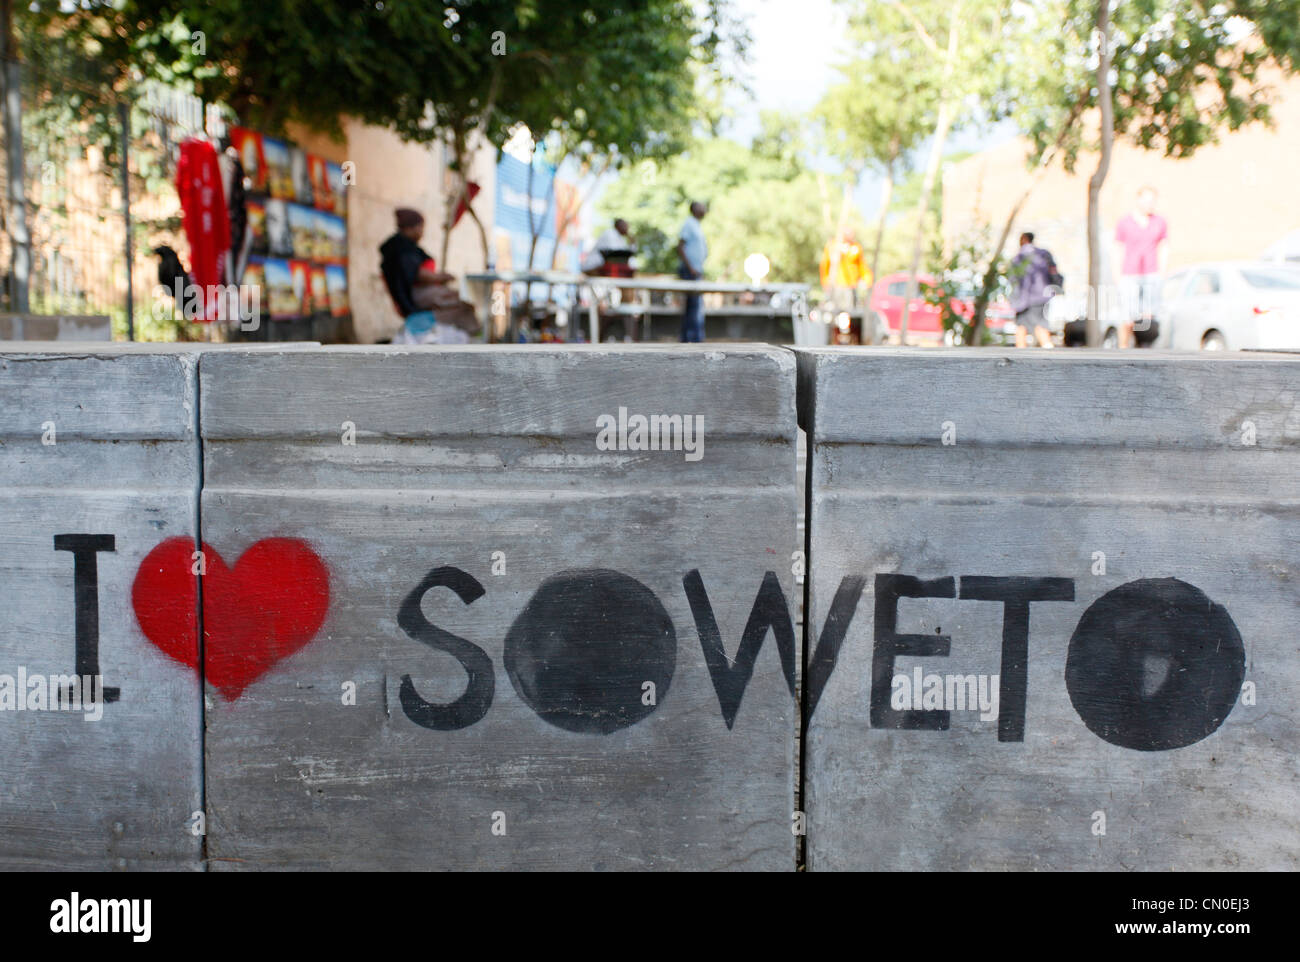 Ich liebe Soweto Graffiti Zeichen auf dem Bürgersteig von Soweto, Johannesburg, Südafrika. Stockfoto